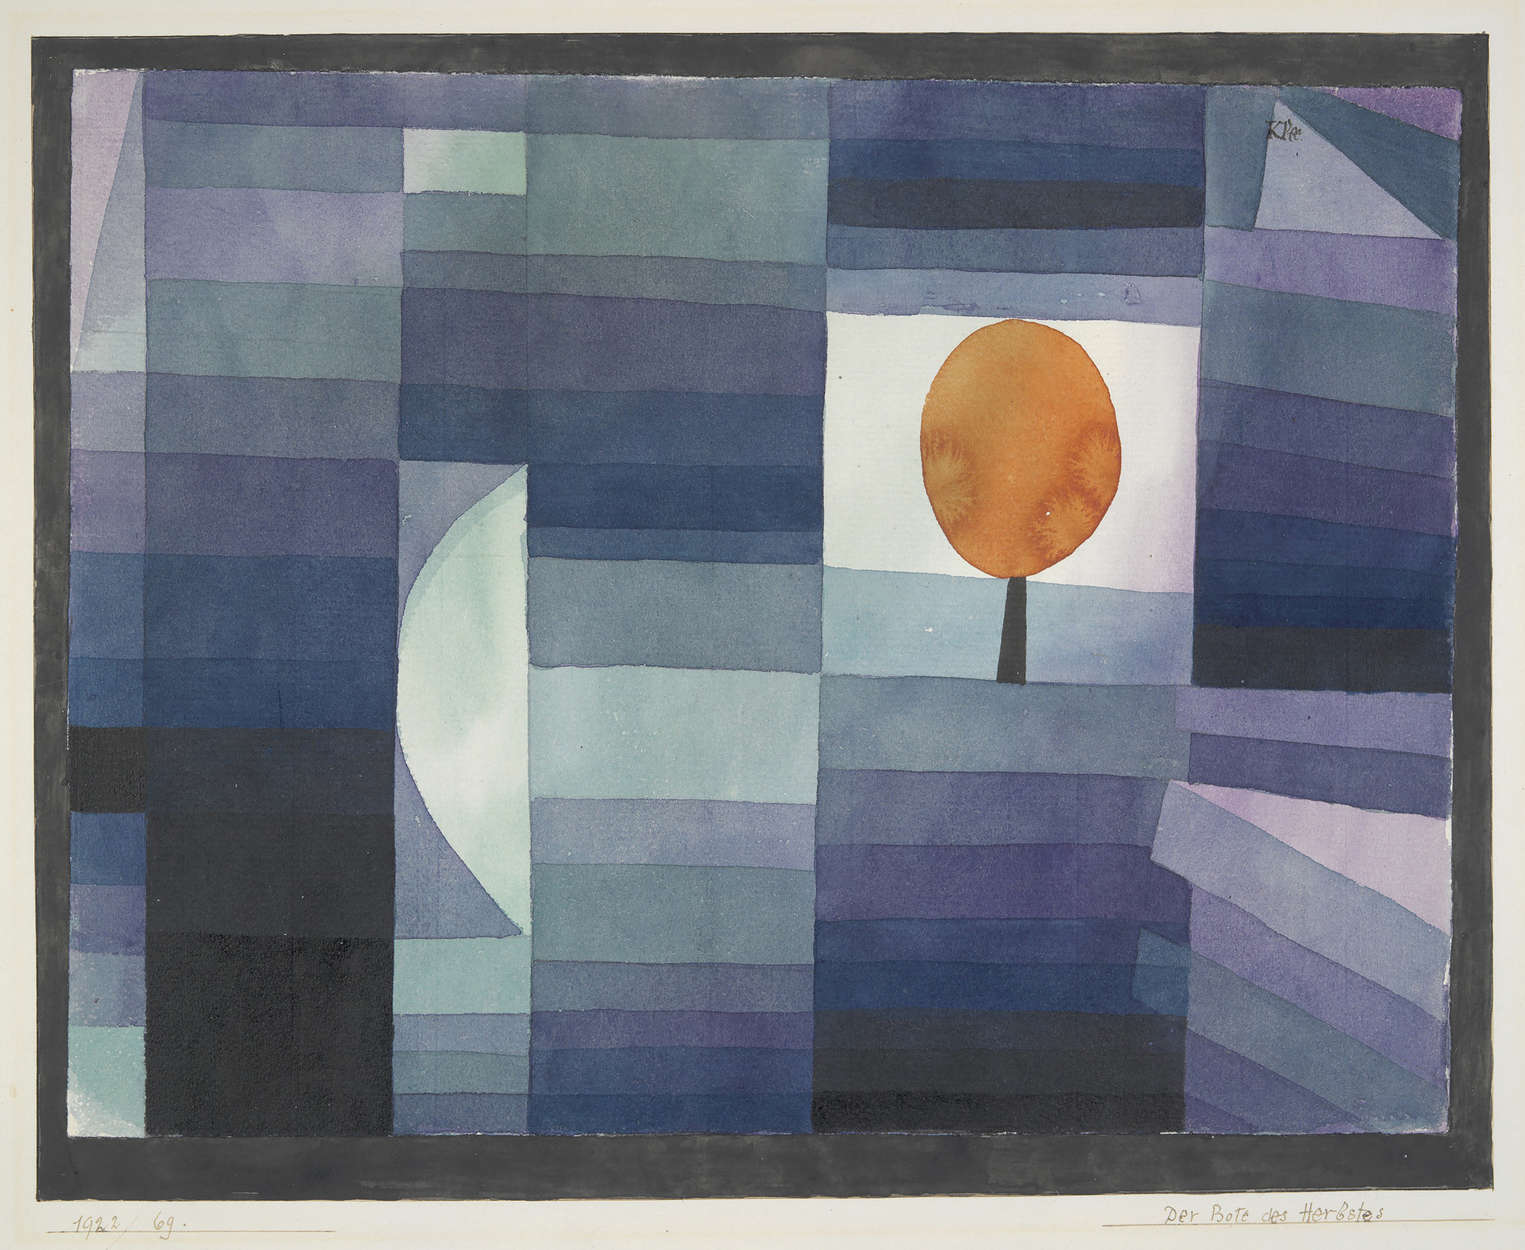             Papier peint panoramique "L'annonciateur de l'automne" de Paul Klee
        